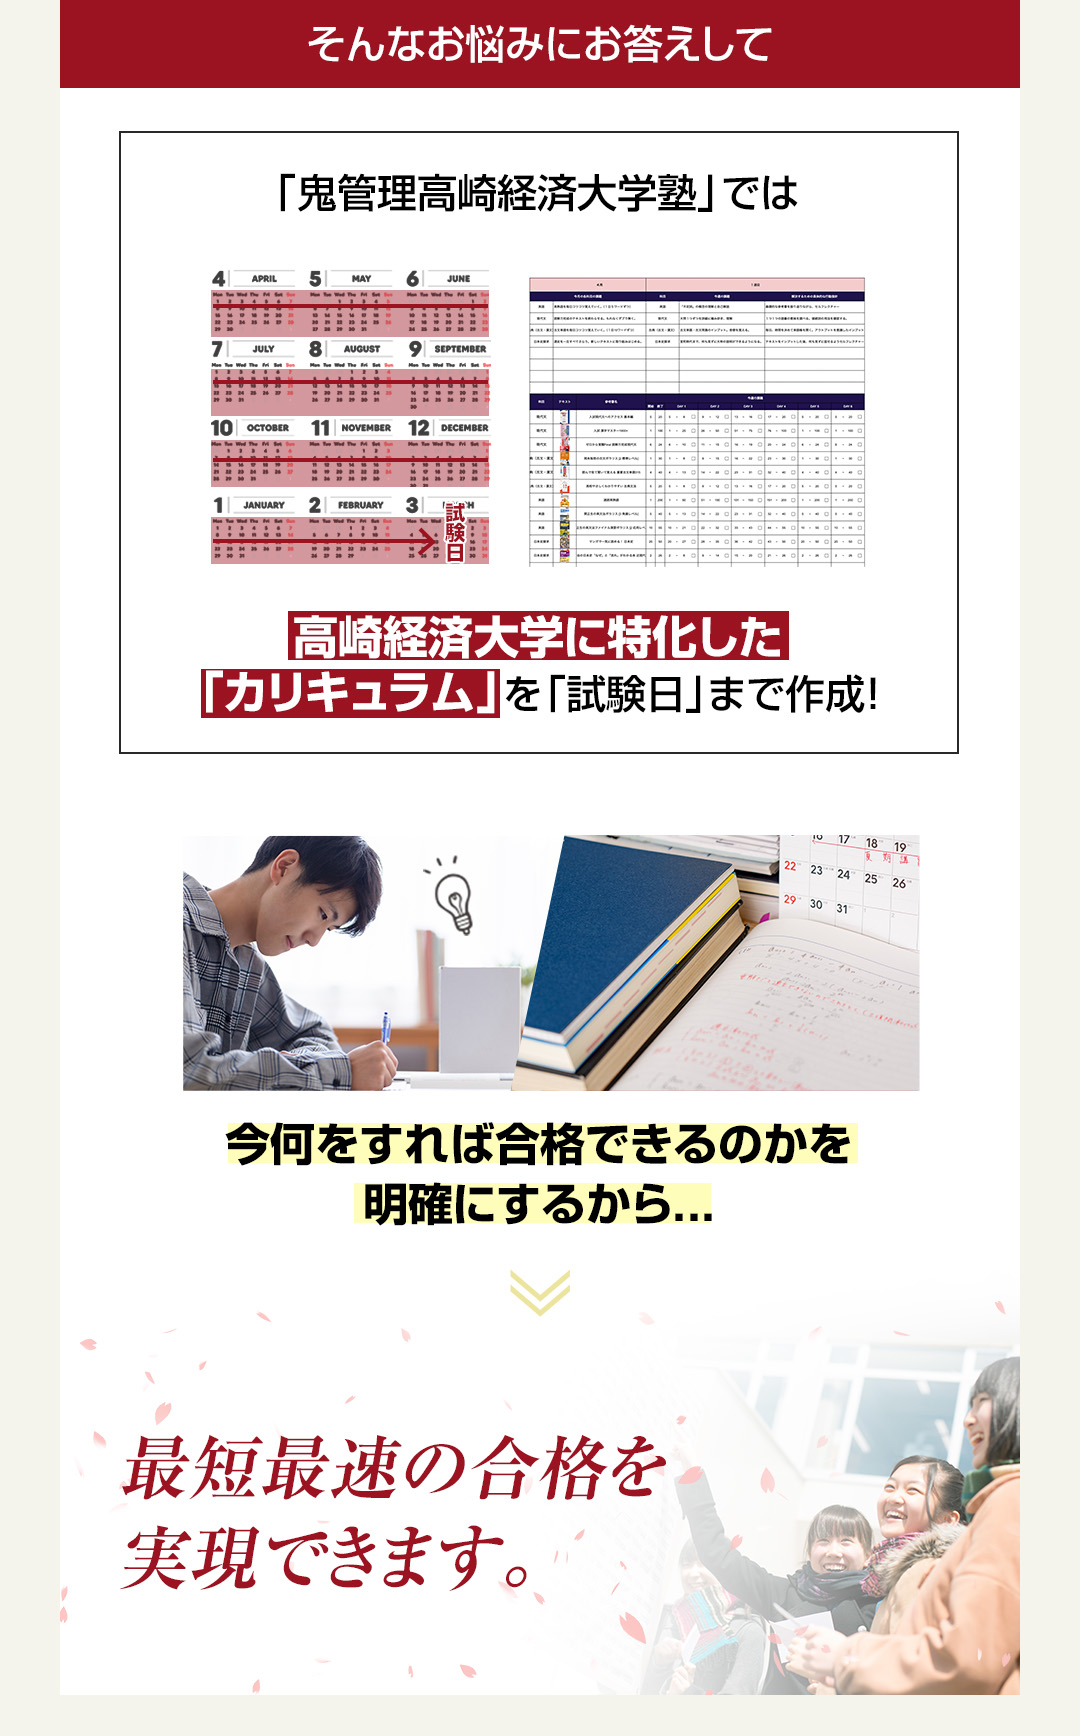 「鬼管理高崎経済大学塾」では高崎経済大学に特化した「カリキュラム」を「試験日」まで作成